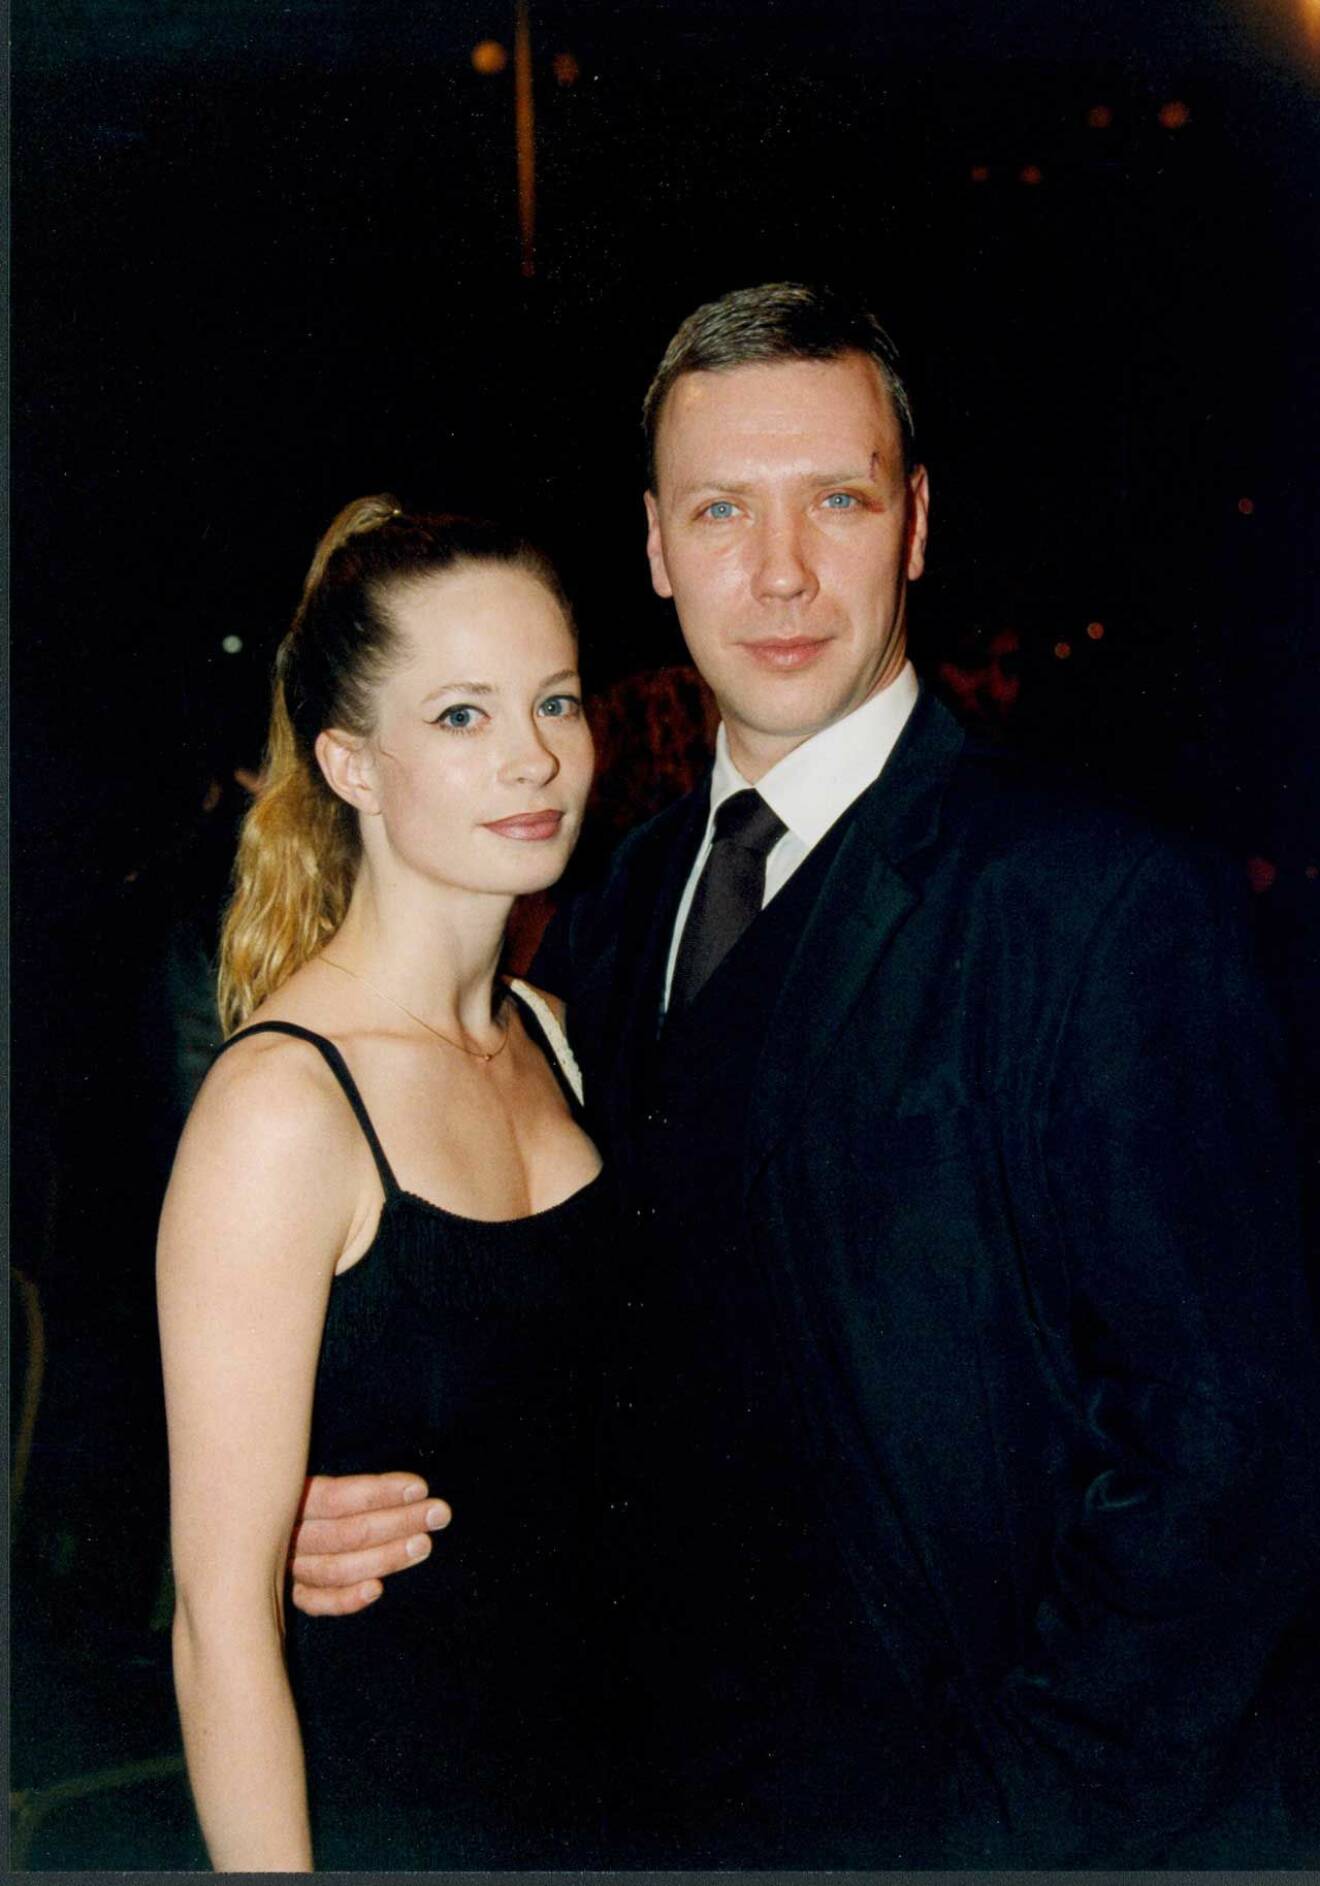 Mikael och dåvarande kärleken Maria Bonnevie, på Filmgalan år 2000.